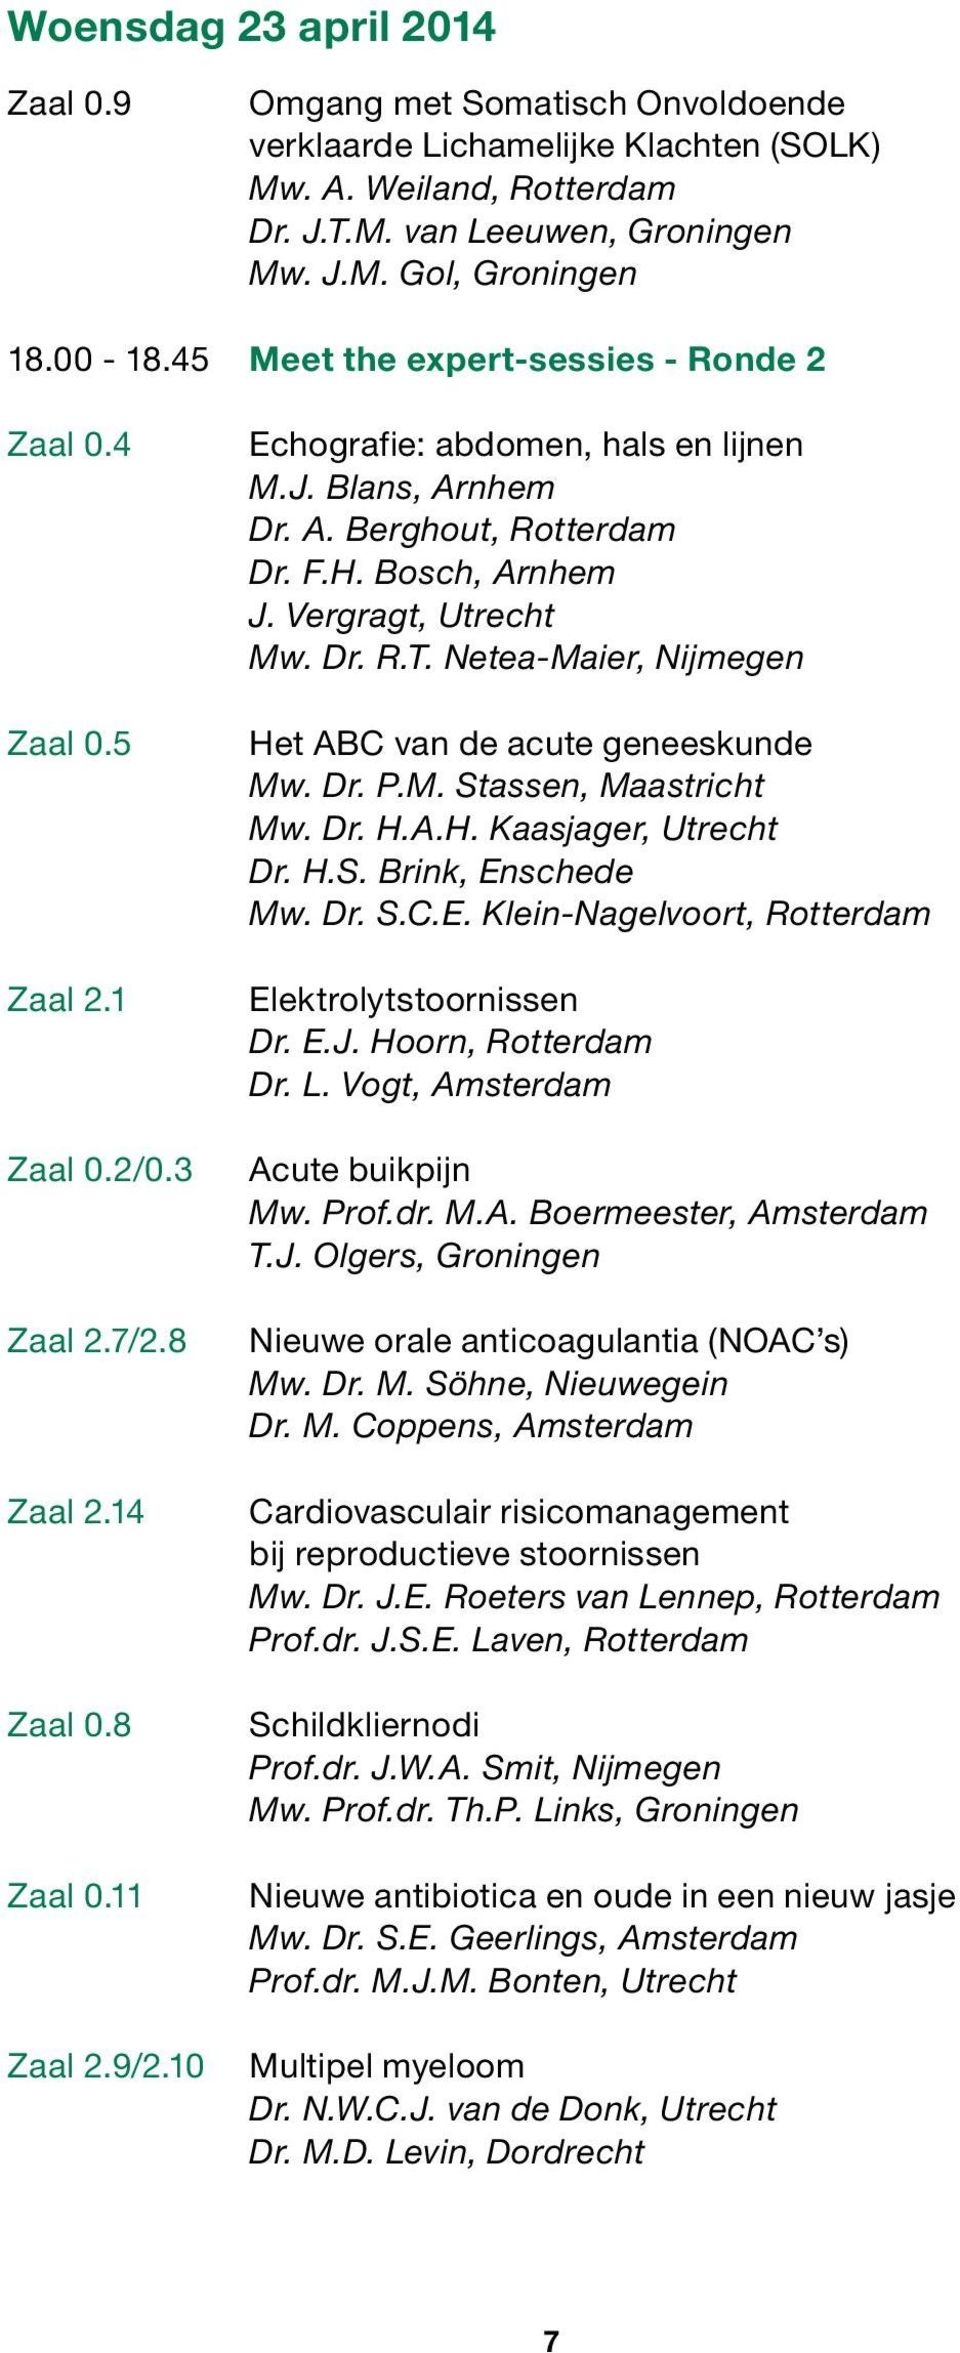 nhem Dr. A. Berghout, Rotterdam Dr. F.H. Bosch, Arnhem J. Vergragt, Utrecht Mw. Dr. R.T. Netea-Maier, Nijmegen Het ABC van de acute geneeskunde Mw. Dr. P.M. Stassen, Maastricht Mw. Dr. H.A.H. Kaasjager, Utrecht Dr.